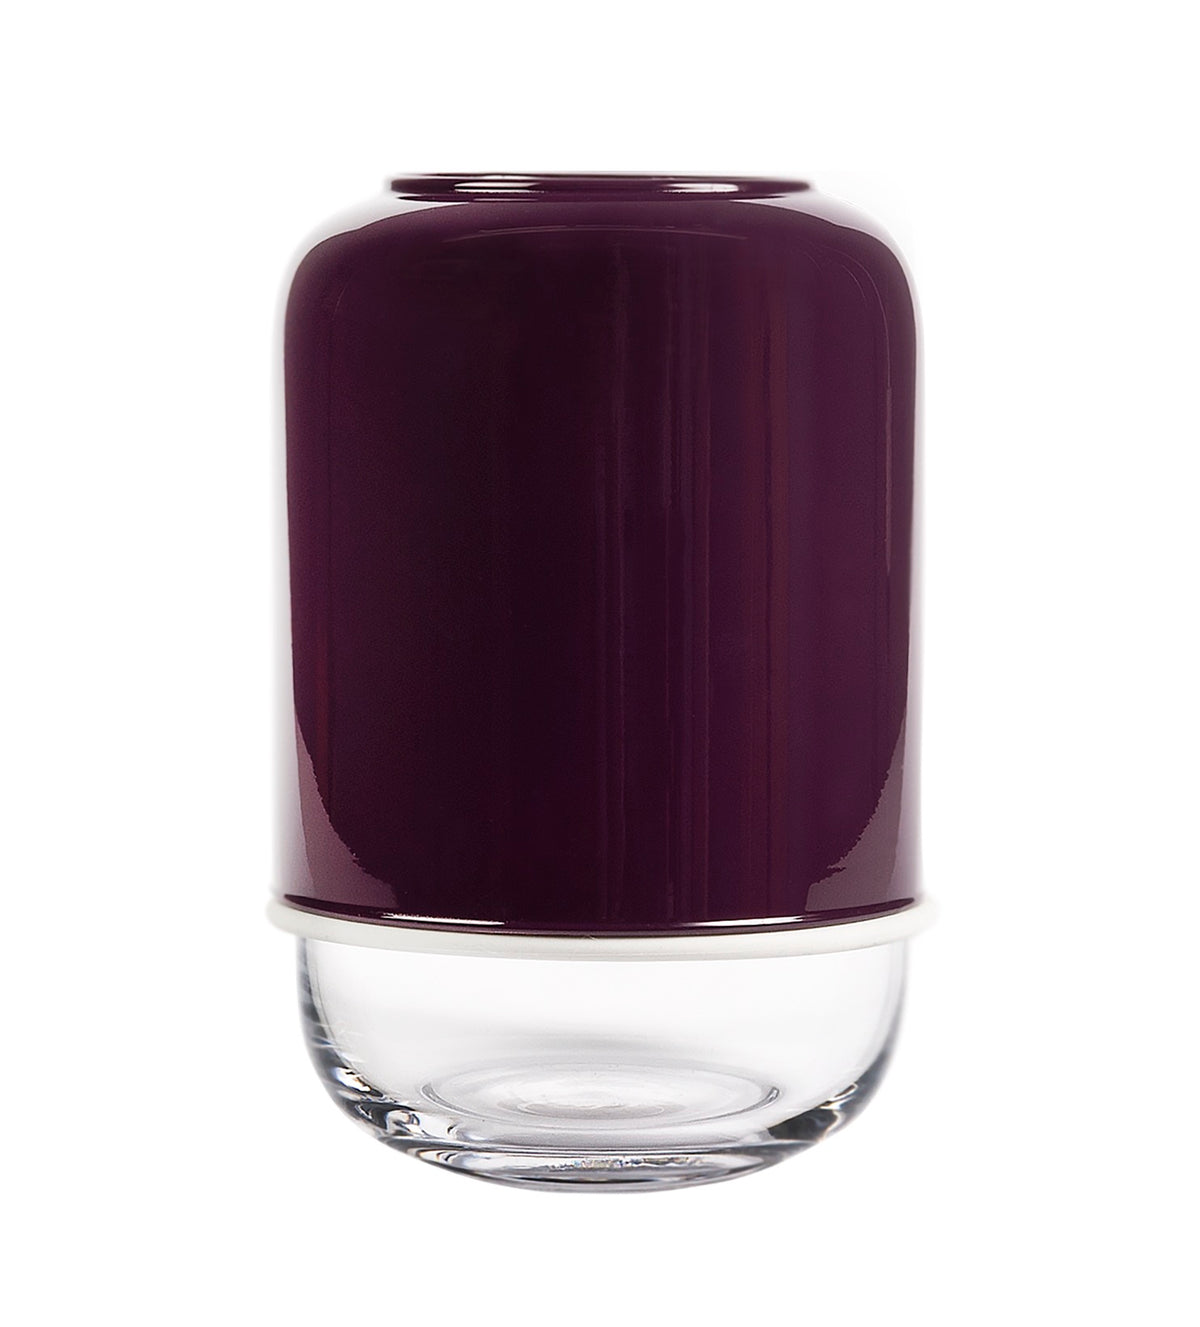 Muurla Design Capsule Vase in Purple